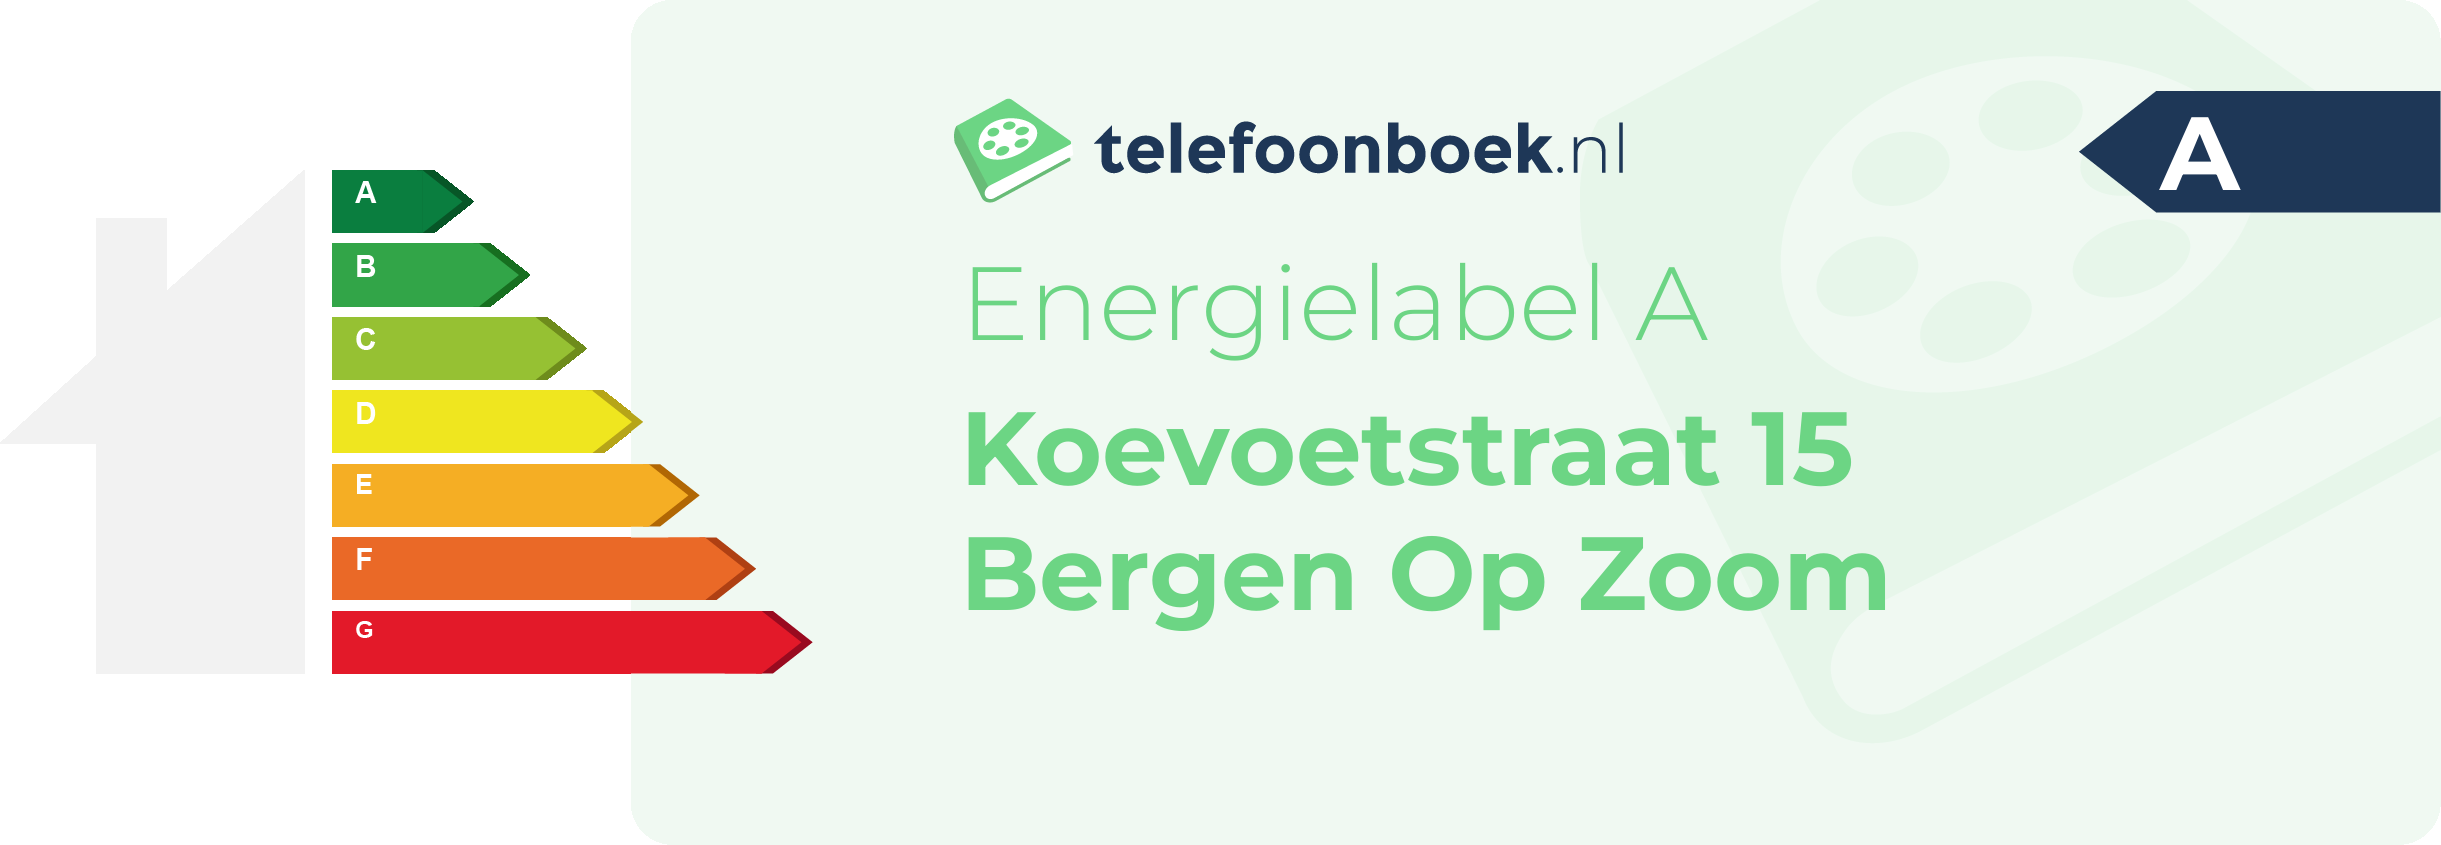 Energielabel Koevoetstraat 15 Bergen Op Zoom